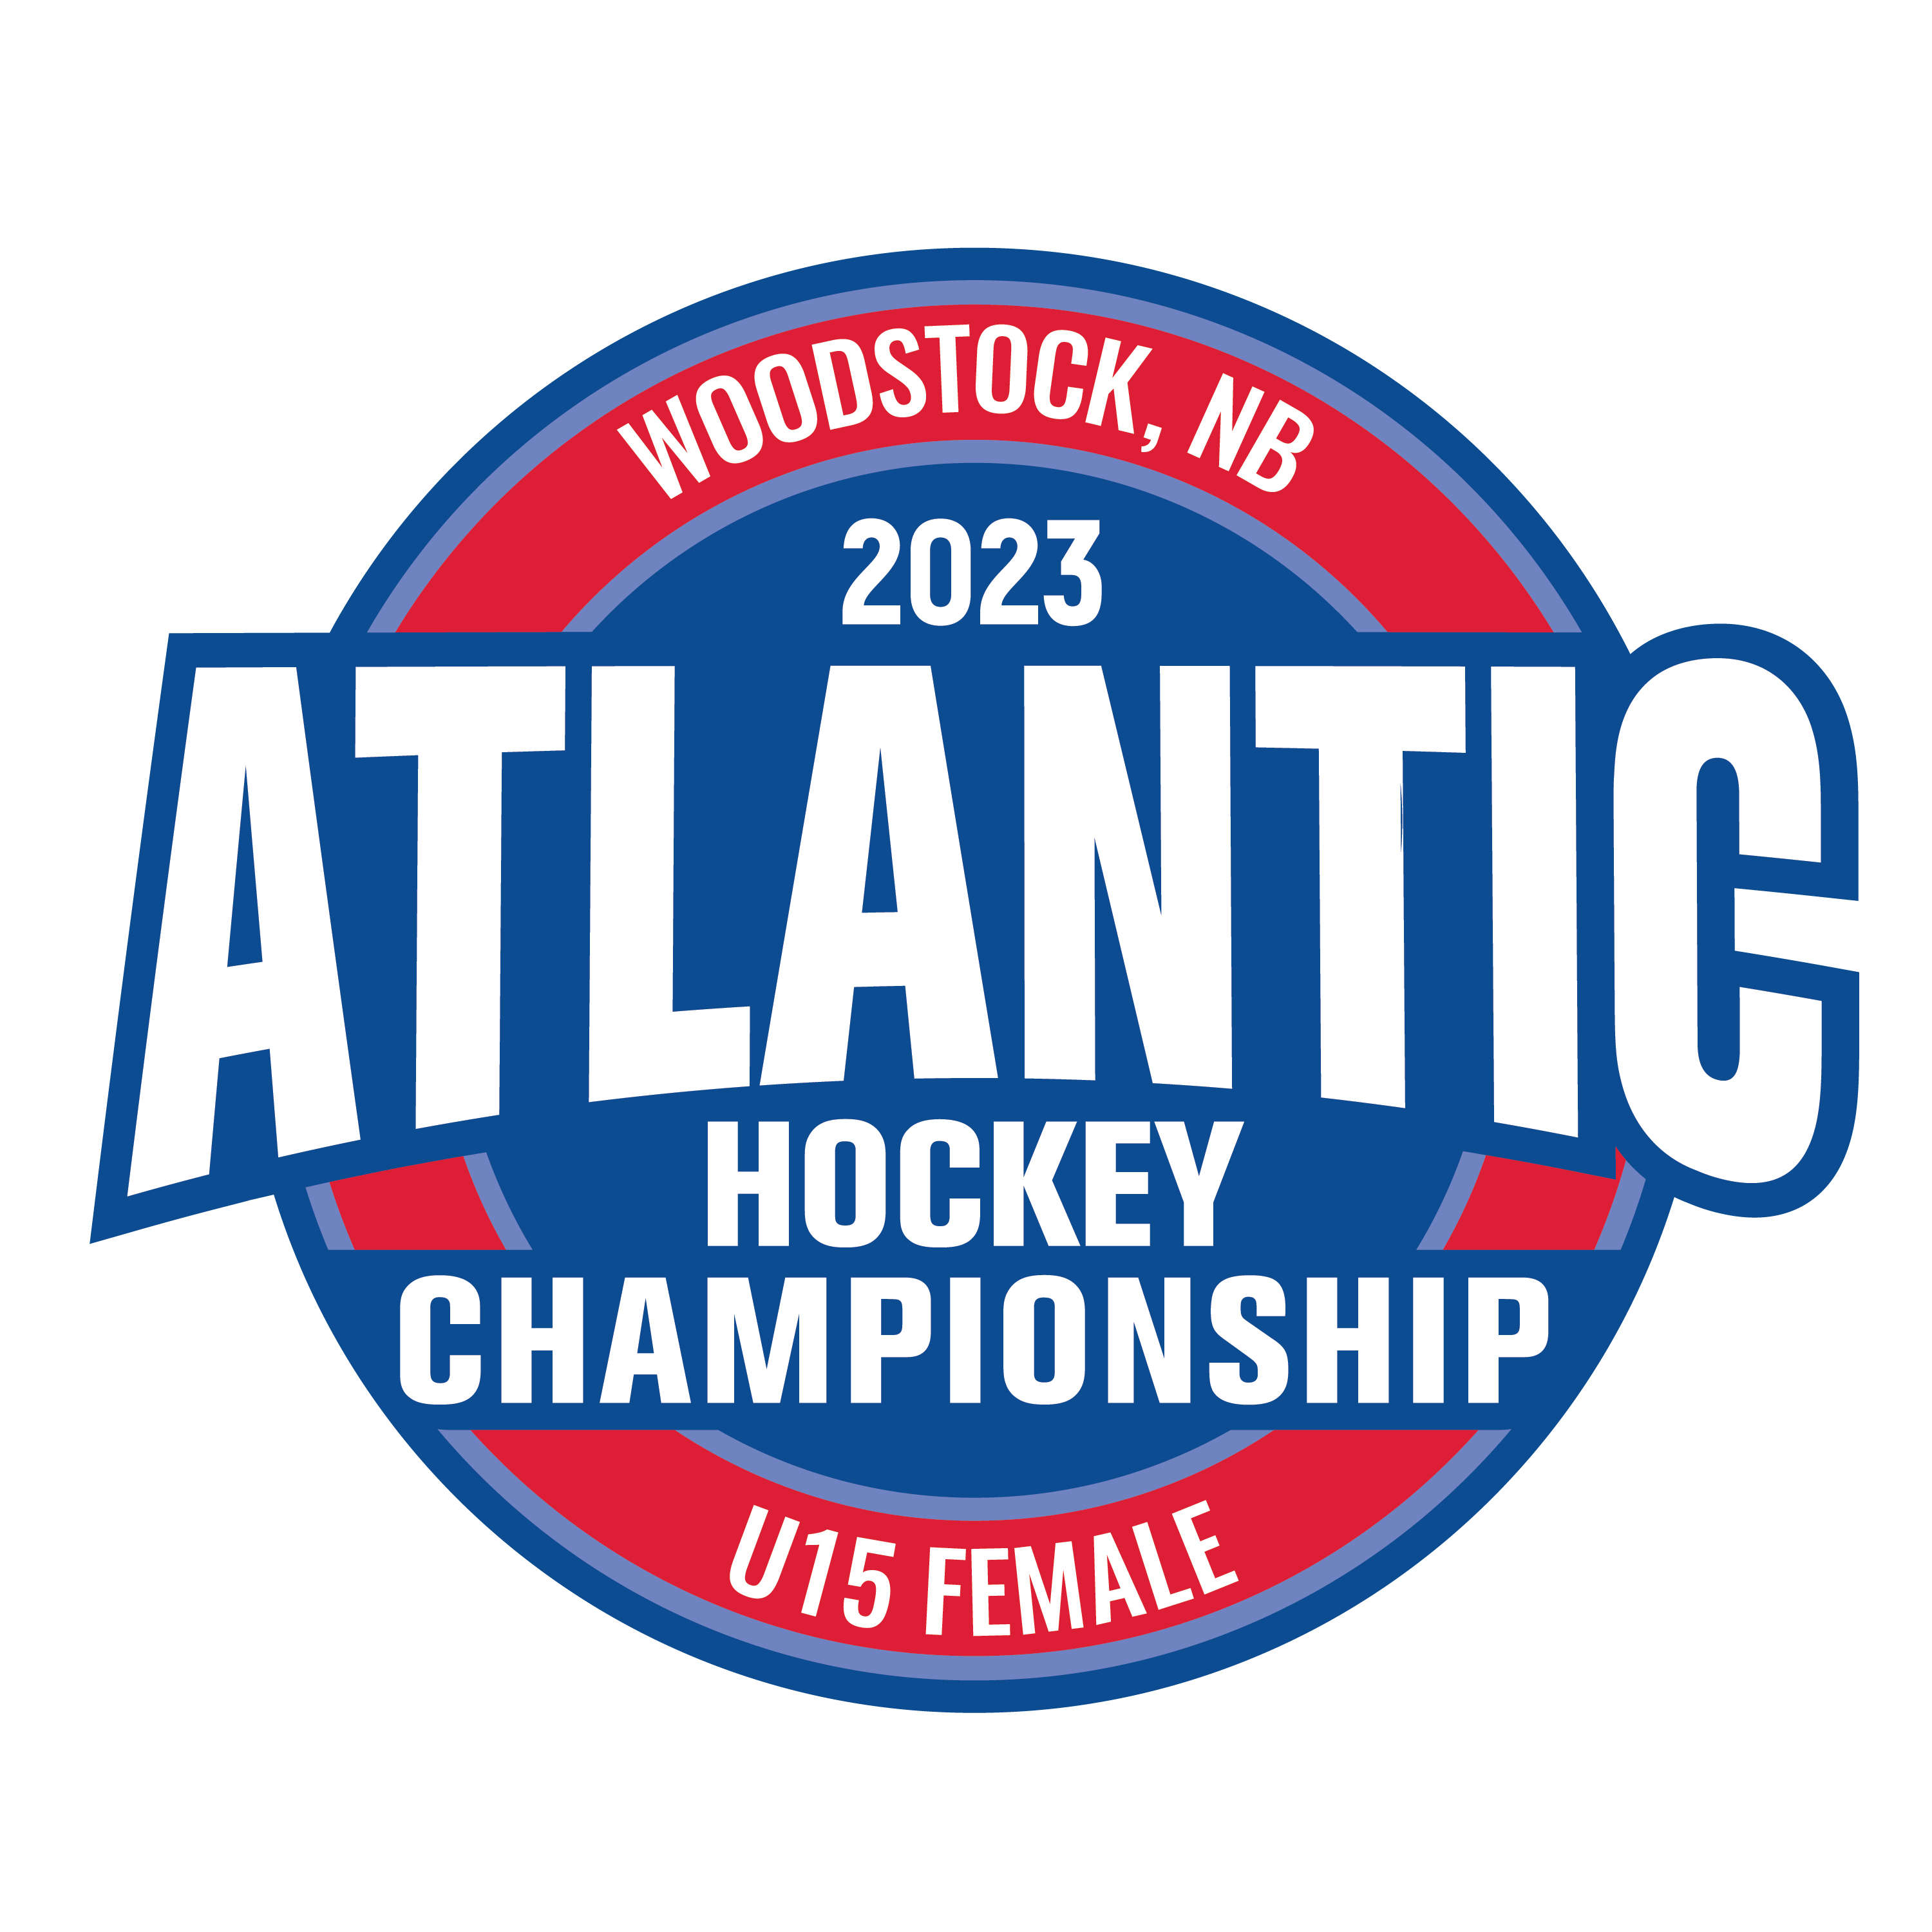 Le championnat de hockey U15 féminin de l’Atlantique aura lieu à Woodstock, au Nouveau‑Brunswick